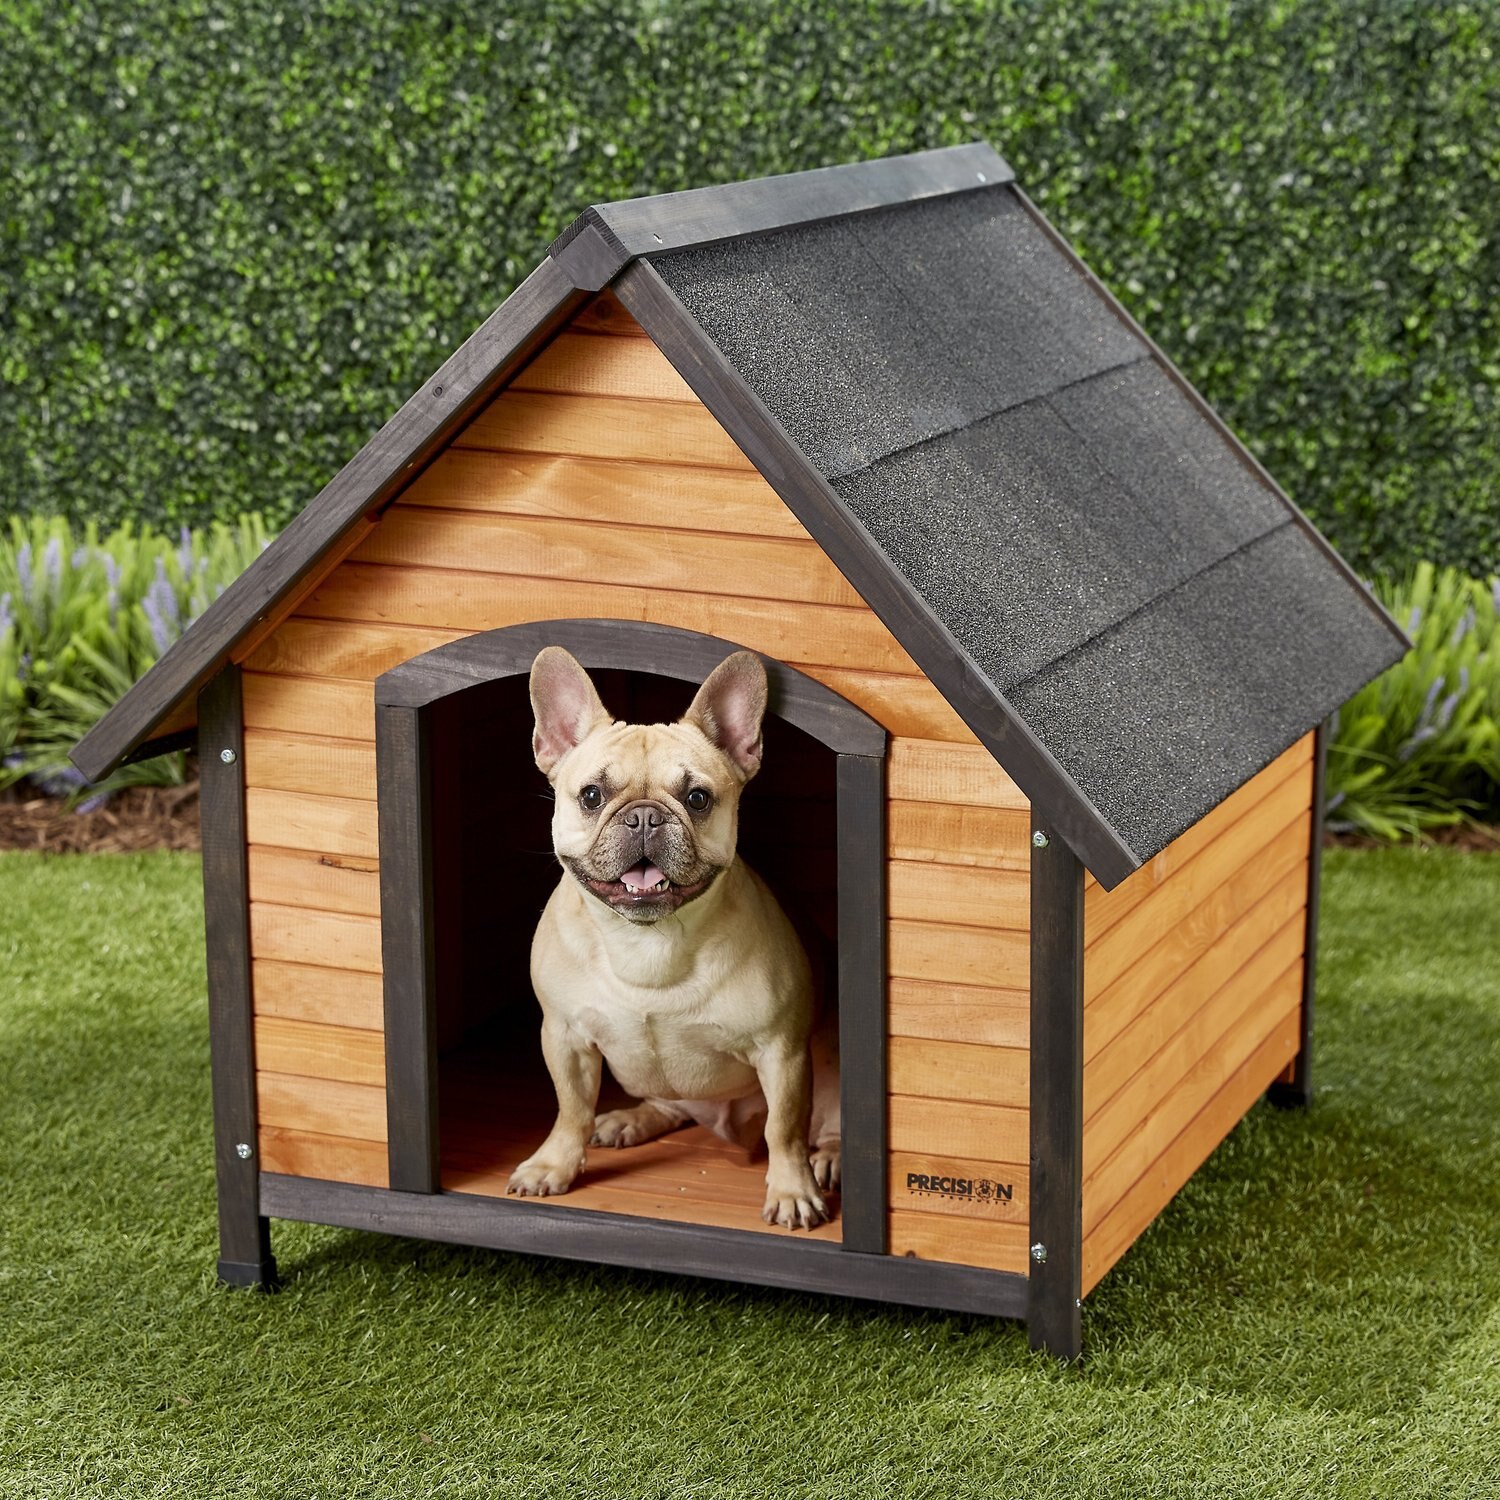 The dog house megaways dogs house net. Домик для собак деревянный. Деревянная будка для собаки. Будка для любимца. Будка для собаки в английском стиле.